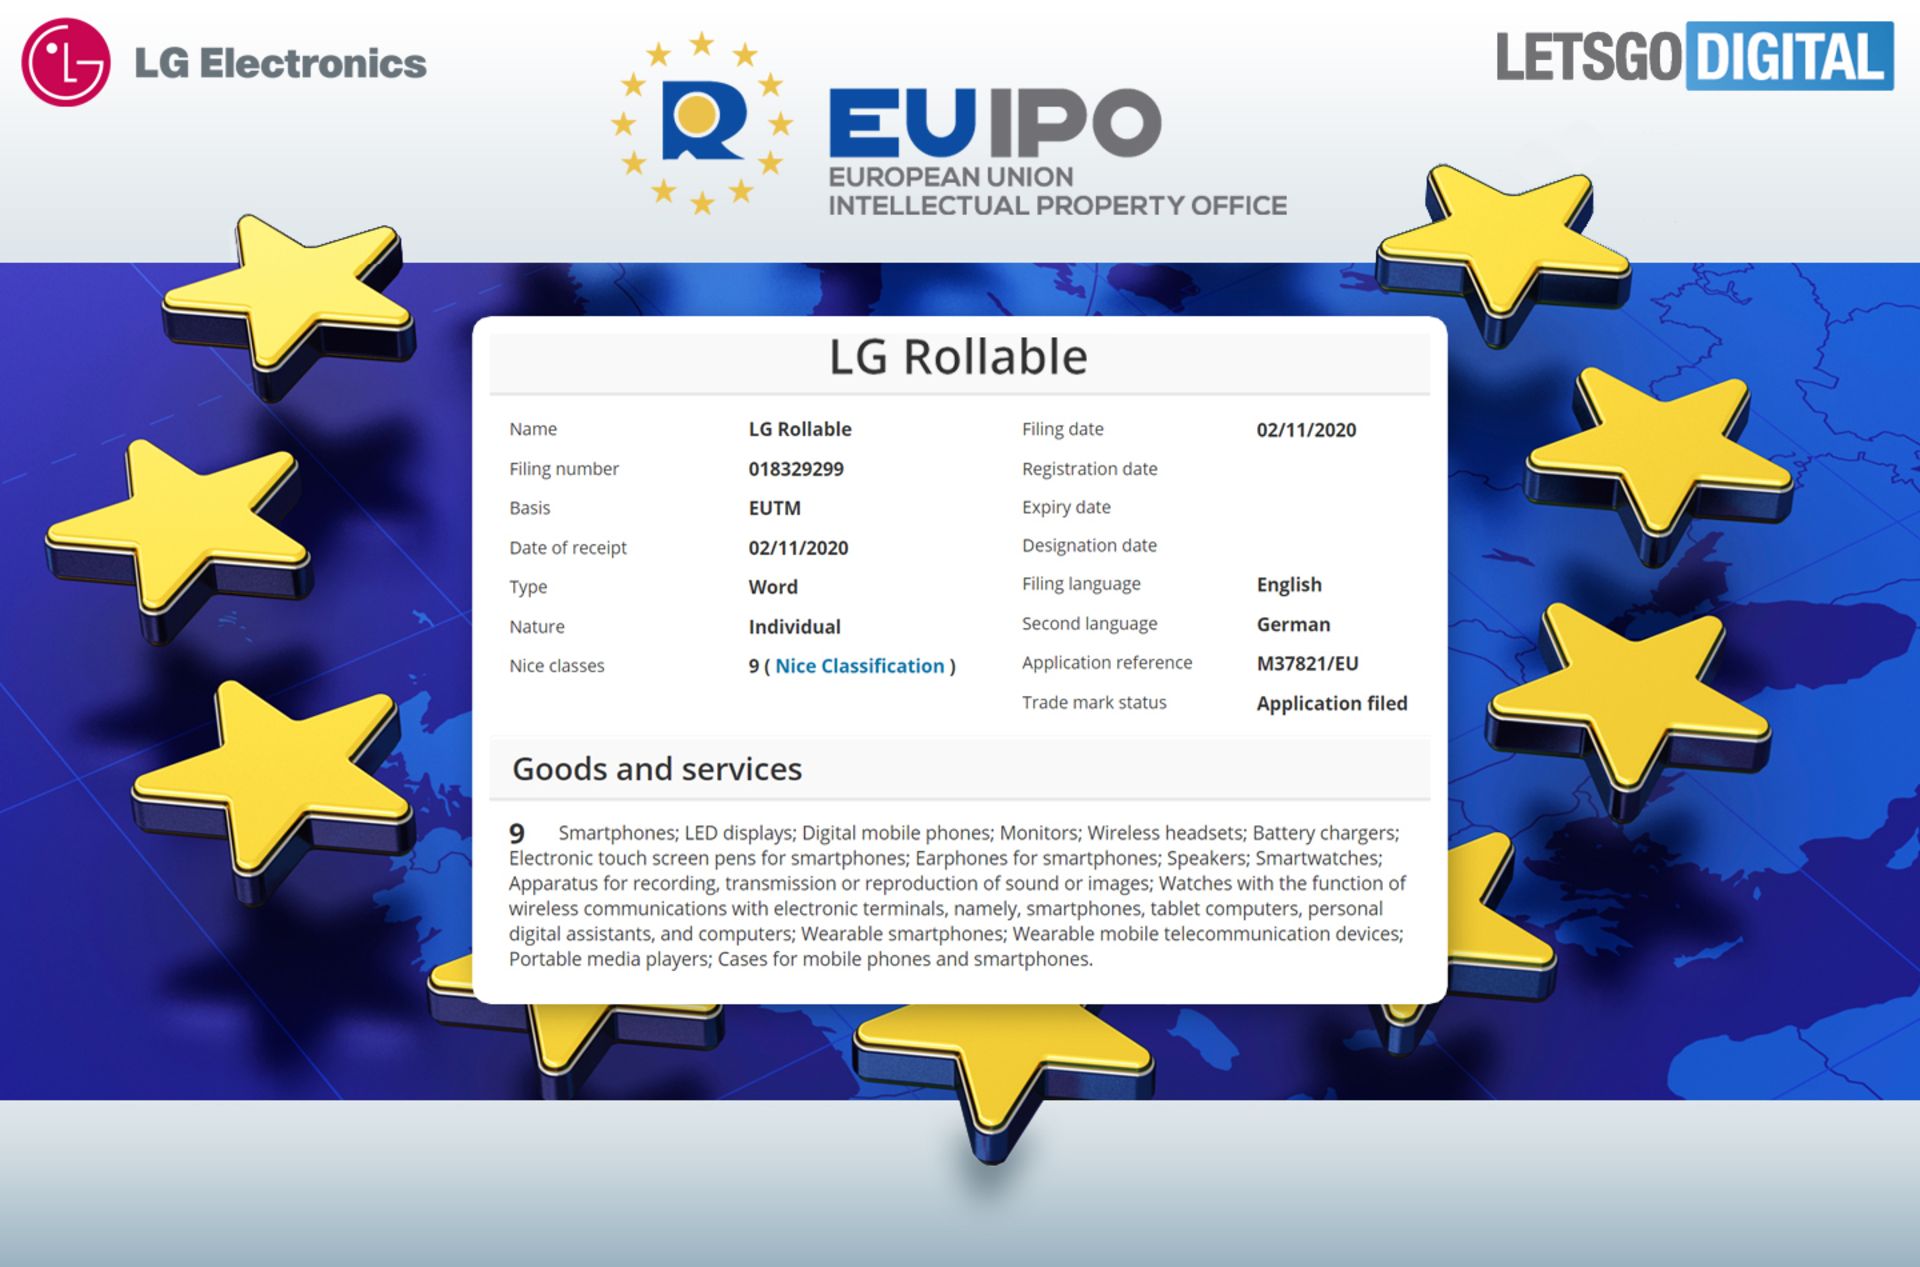 نام تجاری ال جی رولبل / LG Rollable در دفتر مالکیت معنوی اتحادیه اروپا / EUIPO